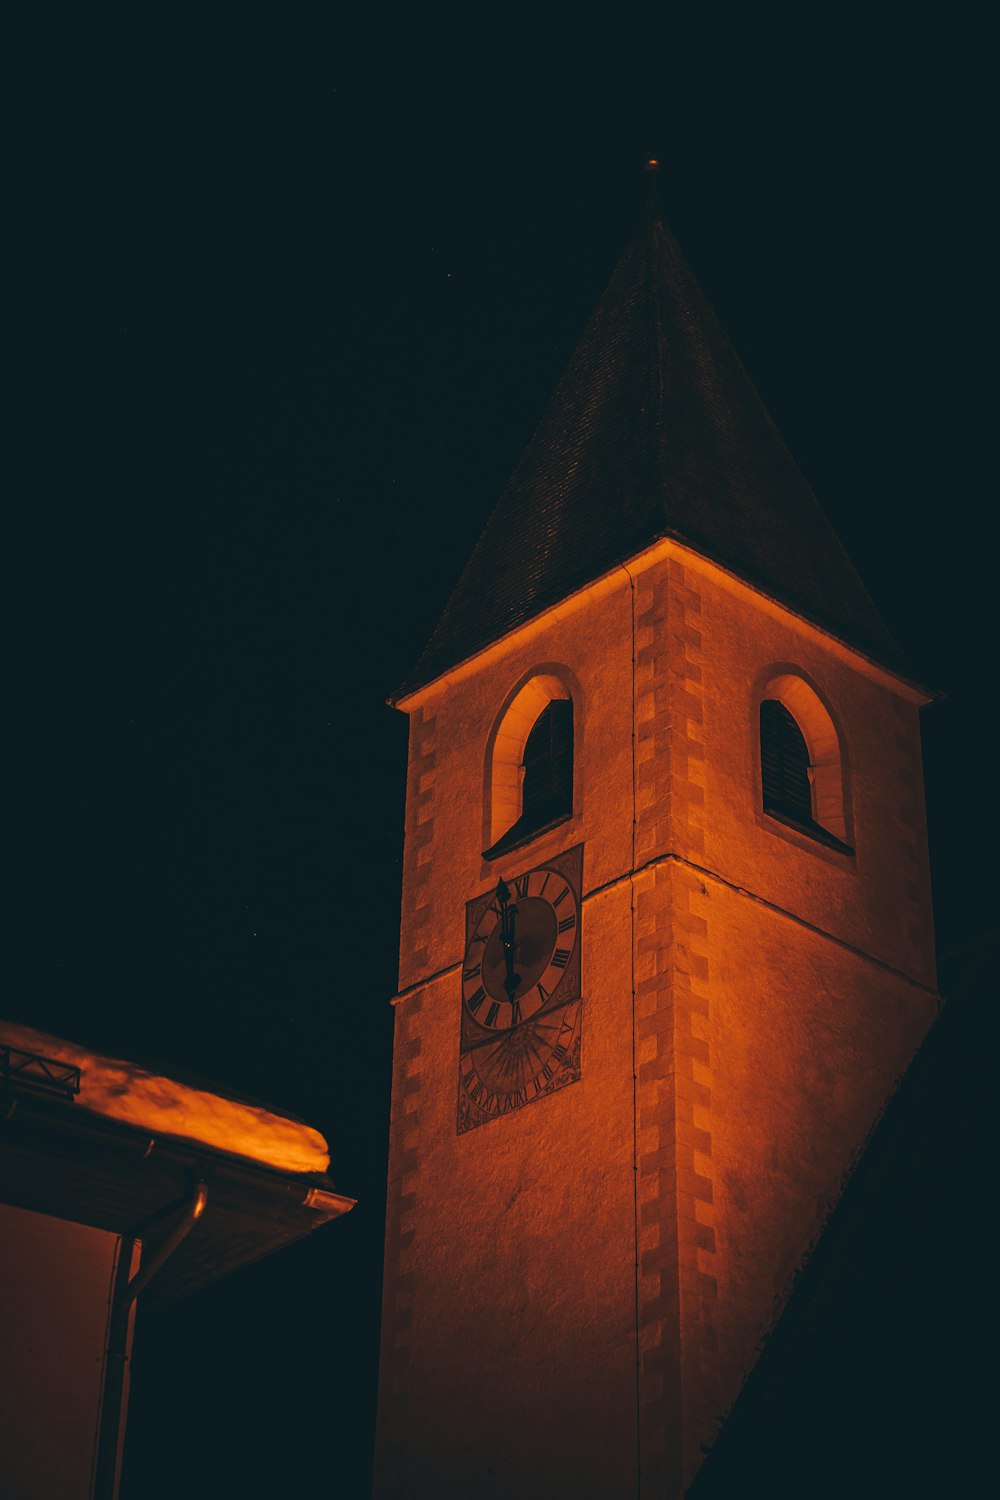 Una torre del reloj iluminada por la noche